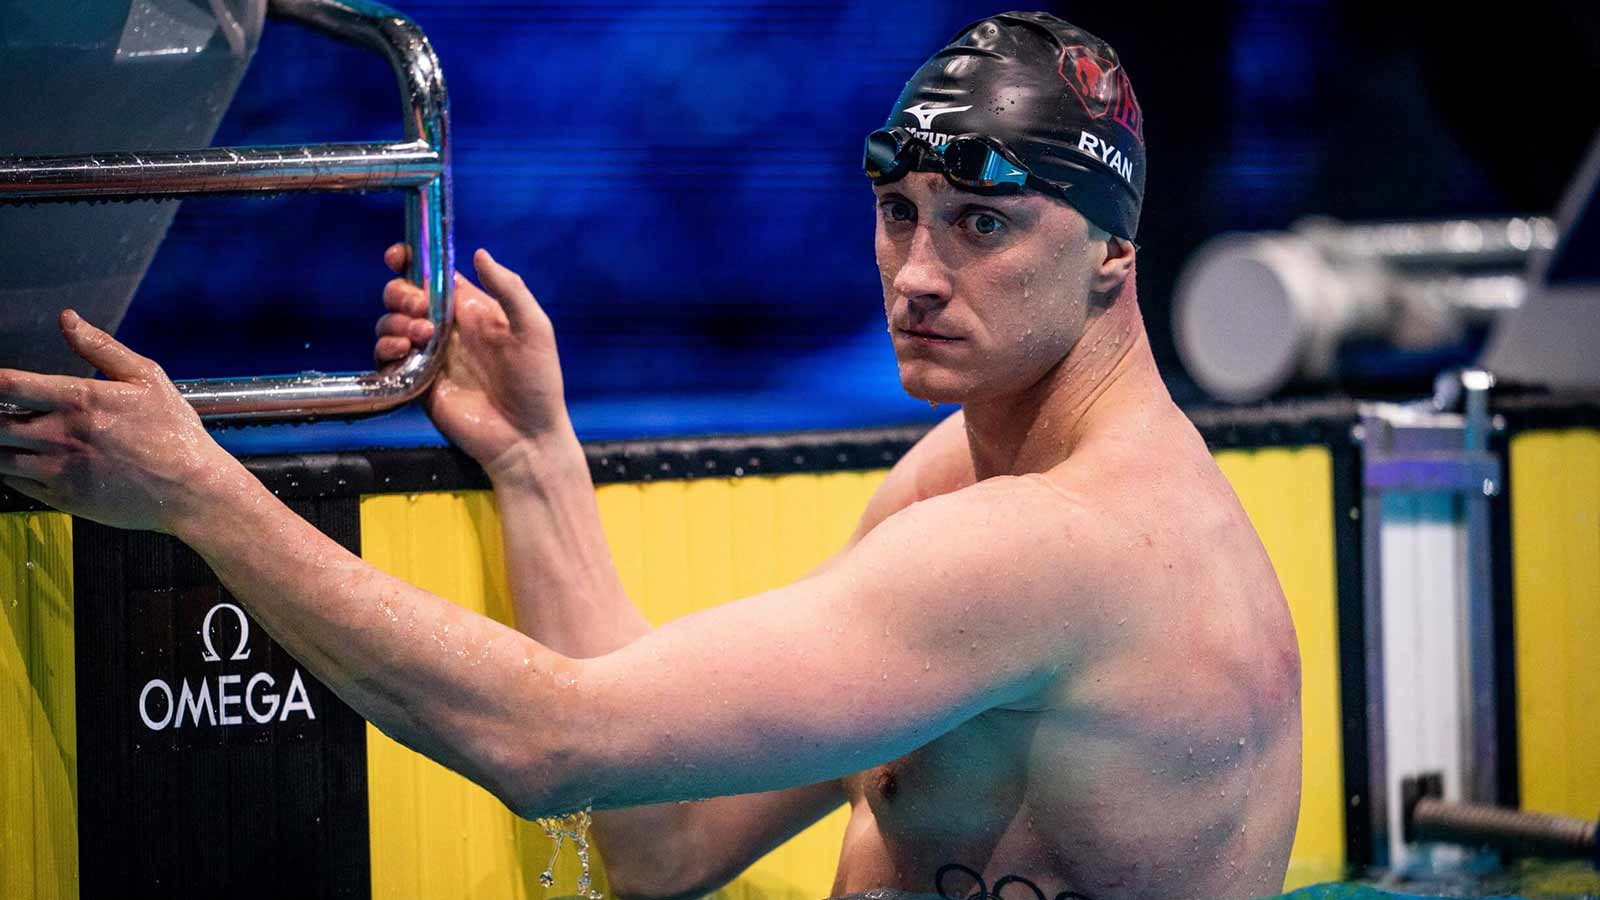 Shane Ryan - World Short Swimming Bronze Winner